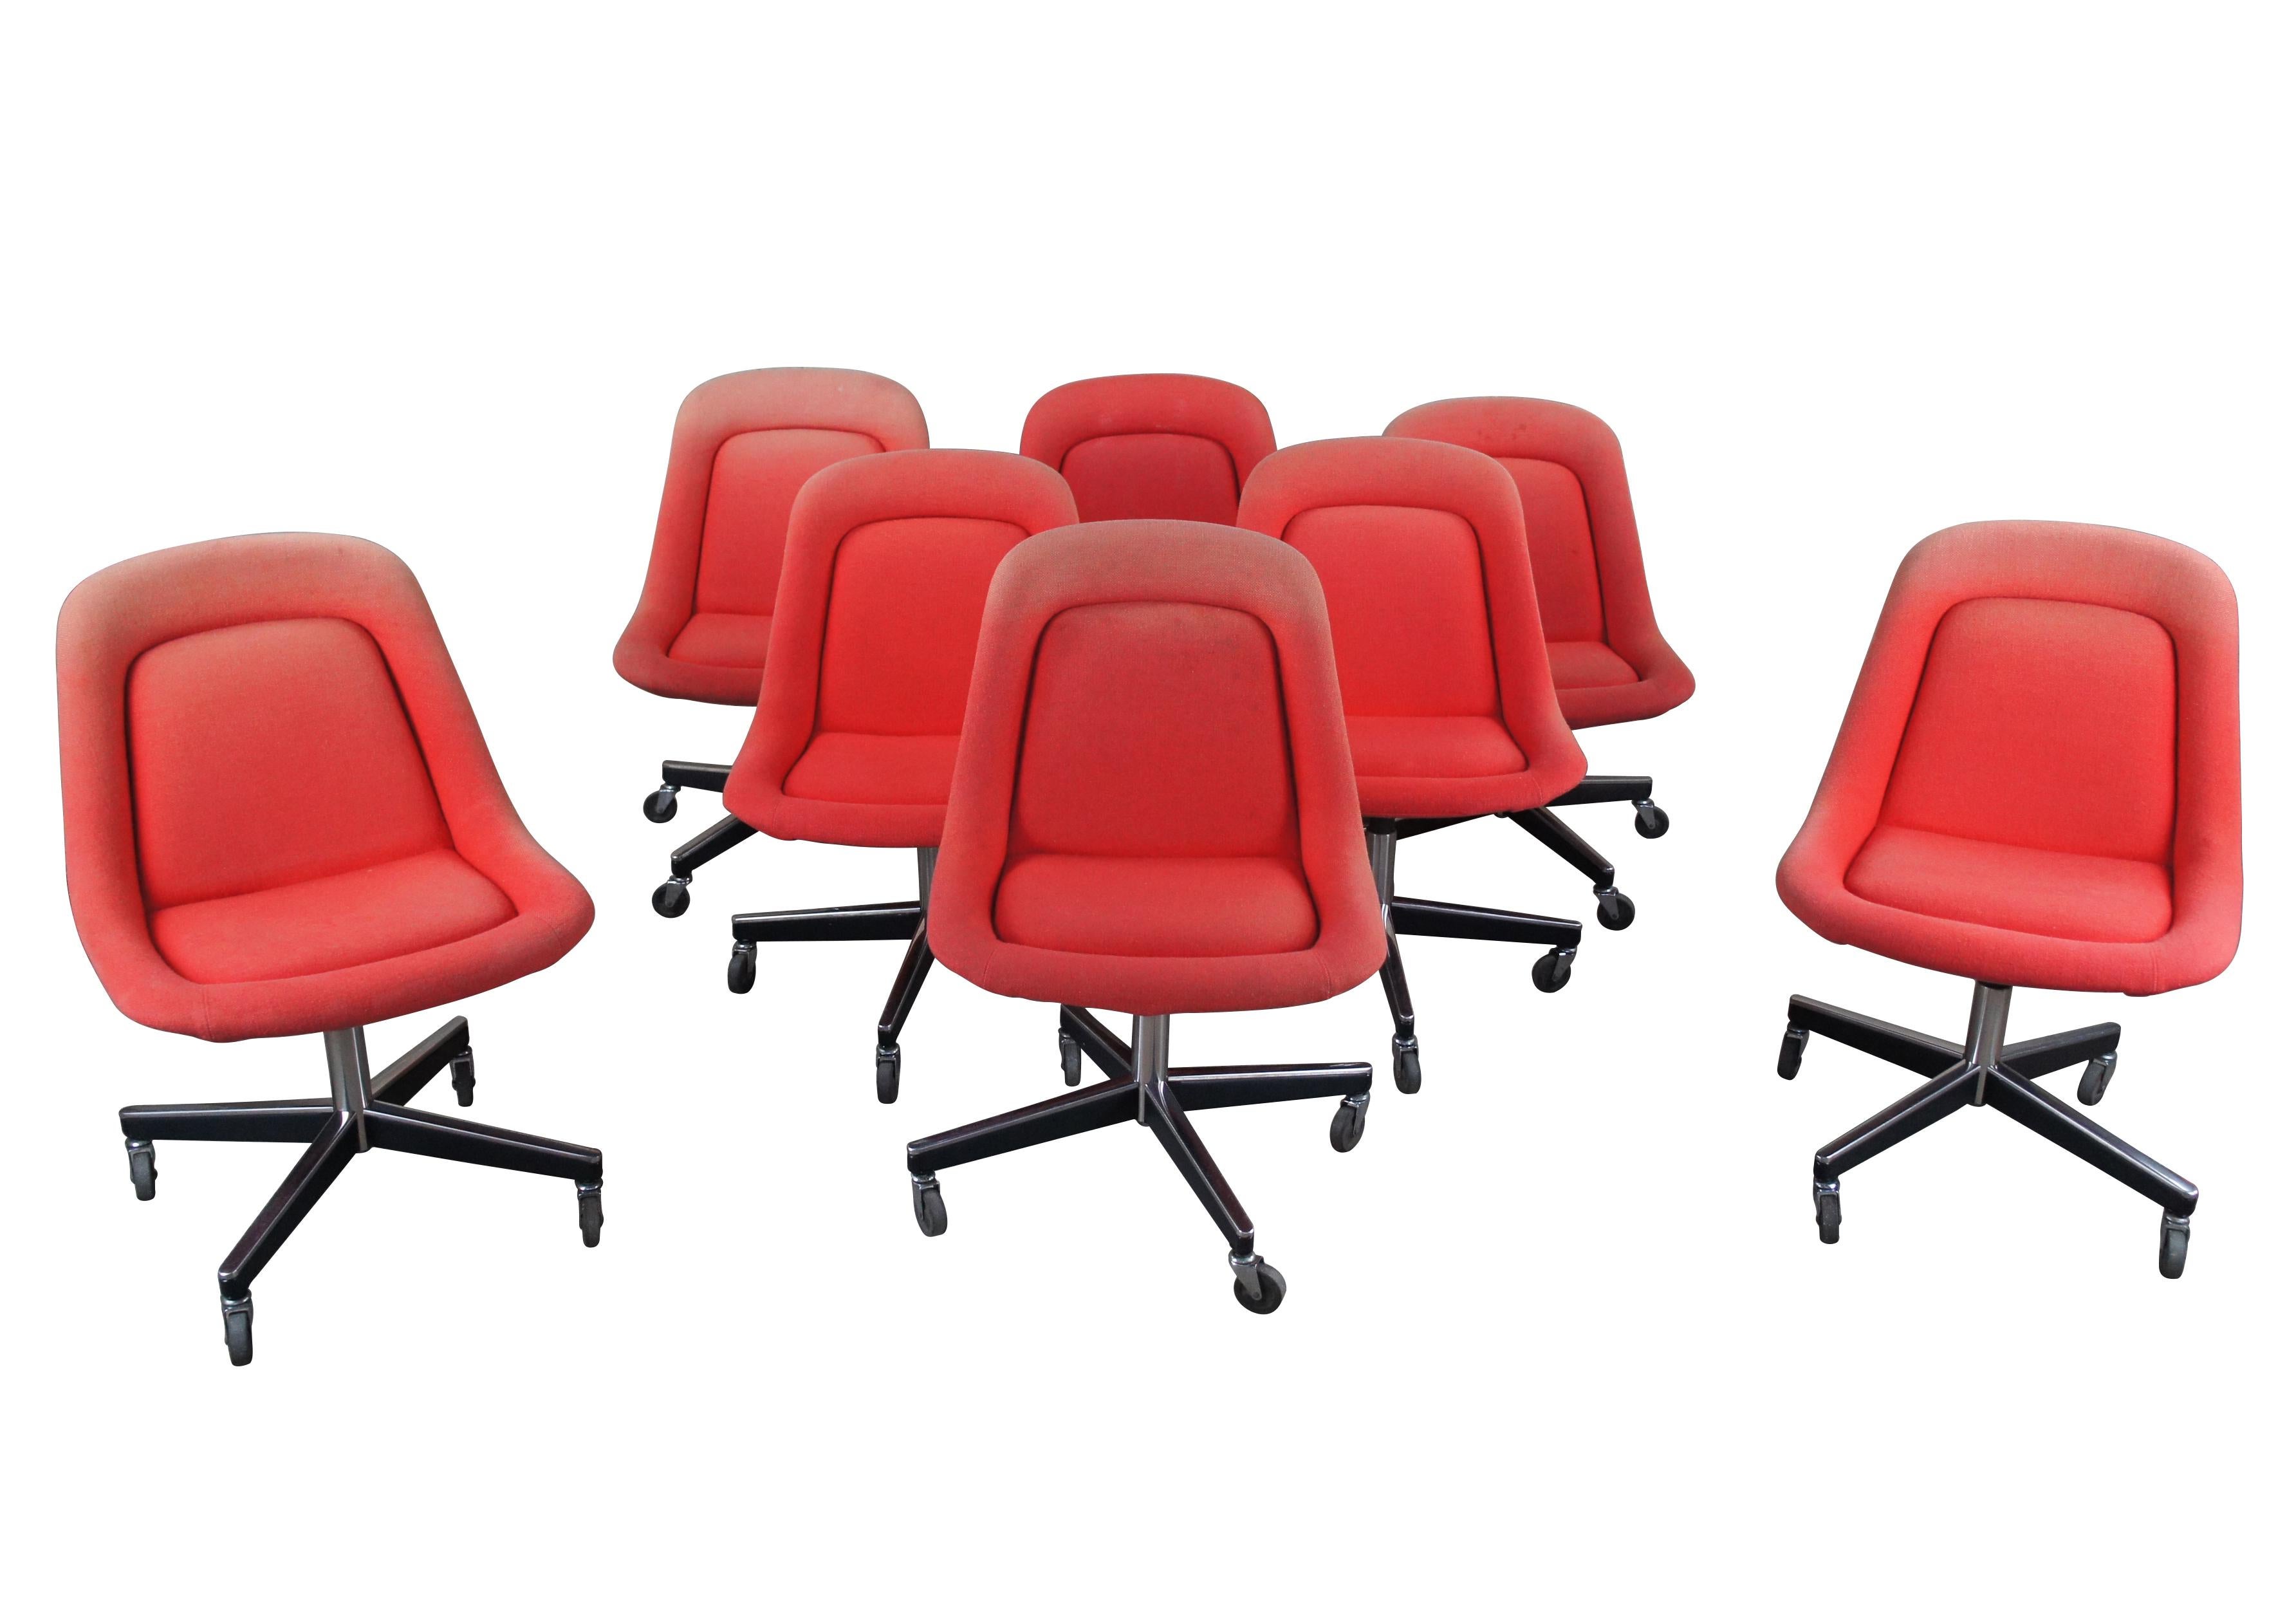 8 Max Pearson for Rolle International chaises pivotantes à roulettes rembourrées en laine rouge, vers les années 1960.  Idéal pour les tables de conférence ou les salles à manger.  Sièges rembourrés en forme de tulipe sur une base roulante pivotante